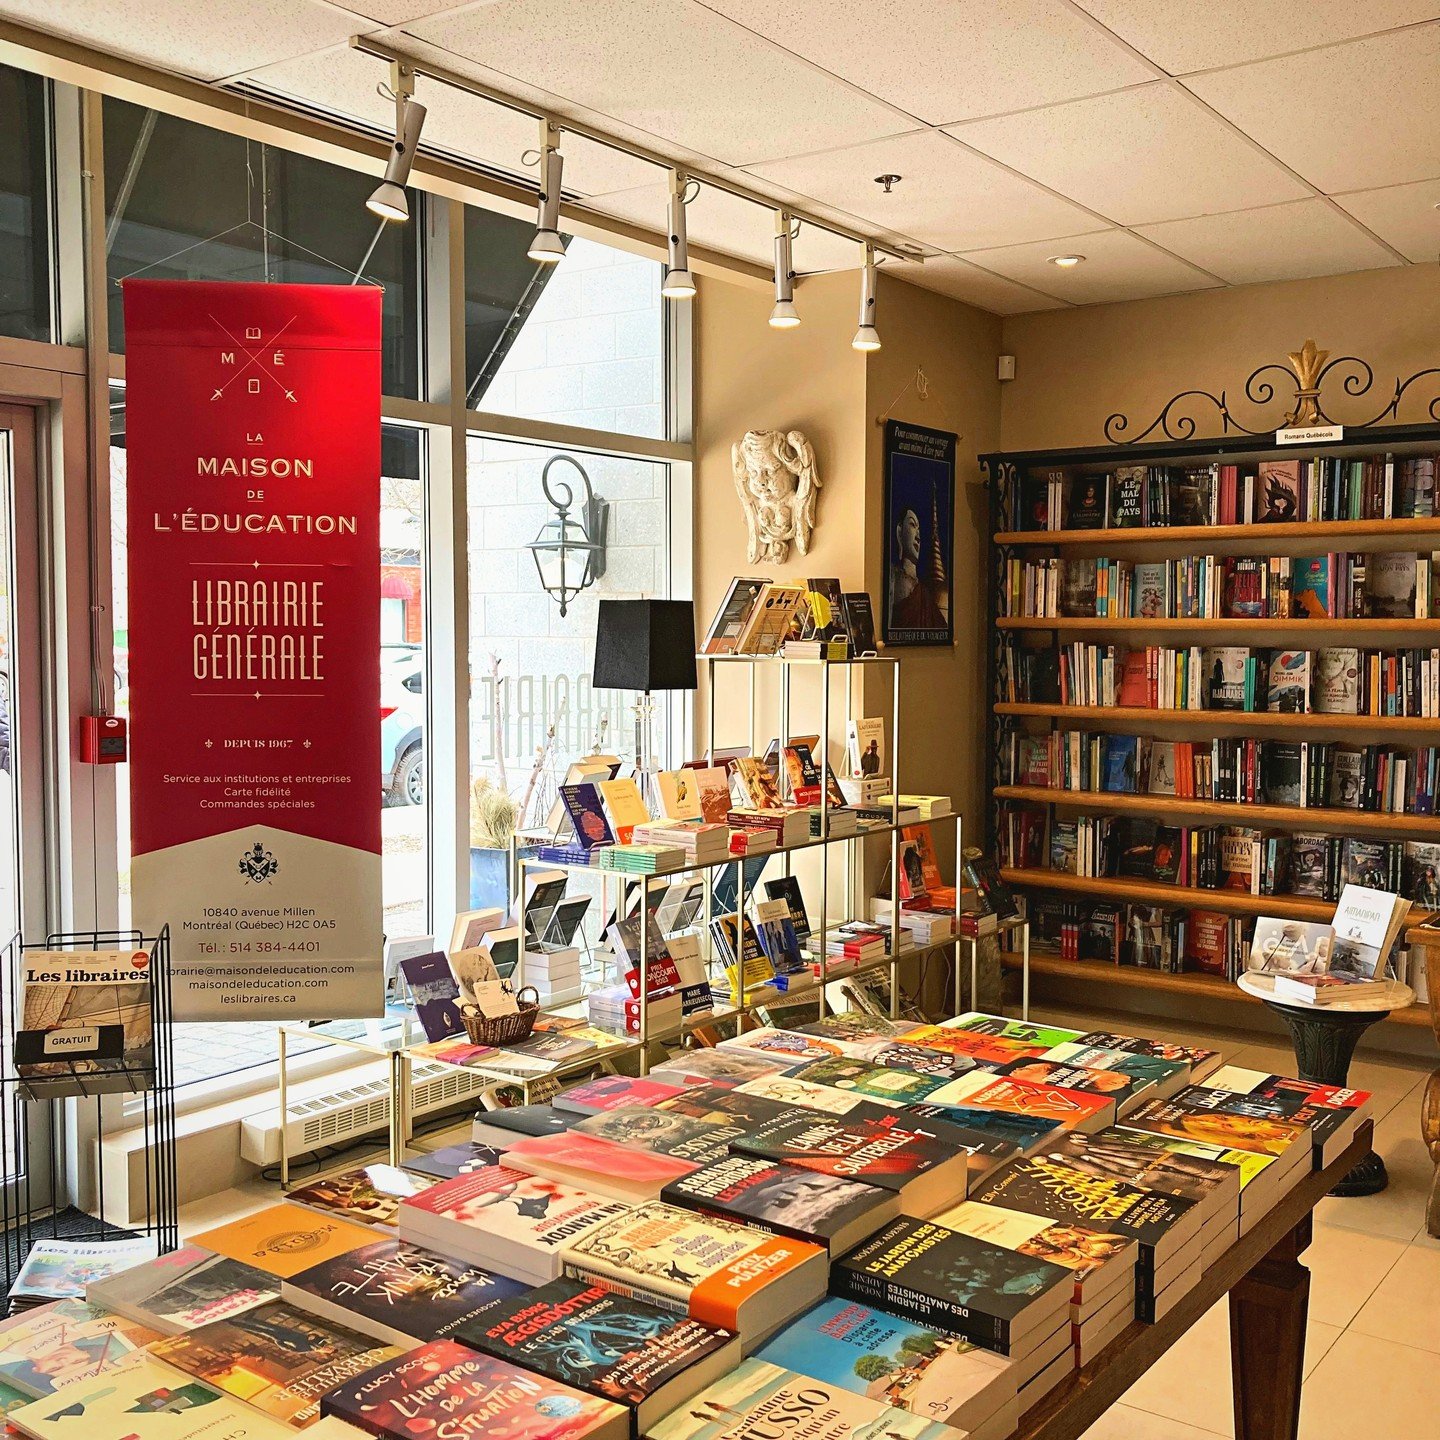 En cette Journ&eacute;e des Librairies Ind&eacute;pendantes Canadiennes 2024, on vous invite &agrave; vous d&eacute;placer et &agrave; encourager vos librairies ind&eacute;pendantes! 🧮

Pour rendre le tout encore mieux, @indiebookstoresca vous propo